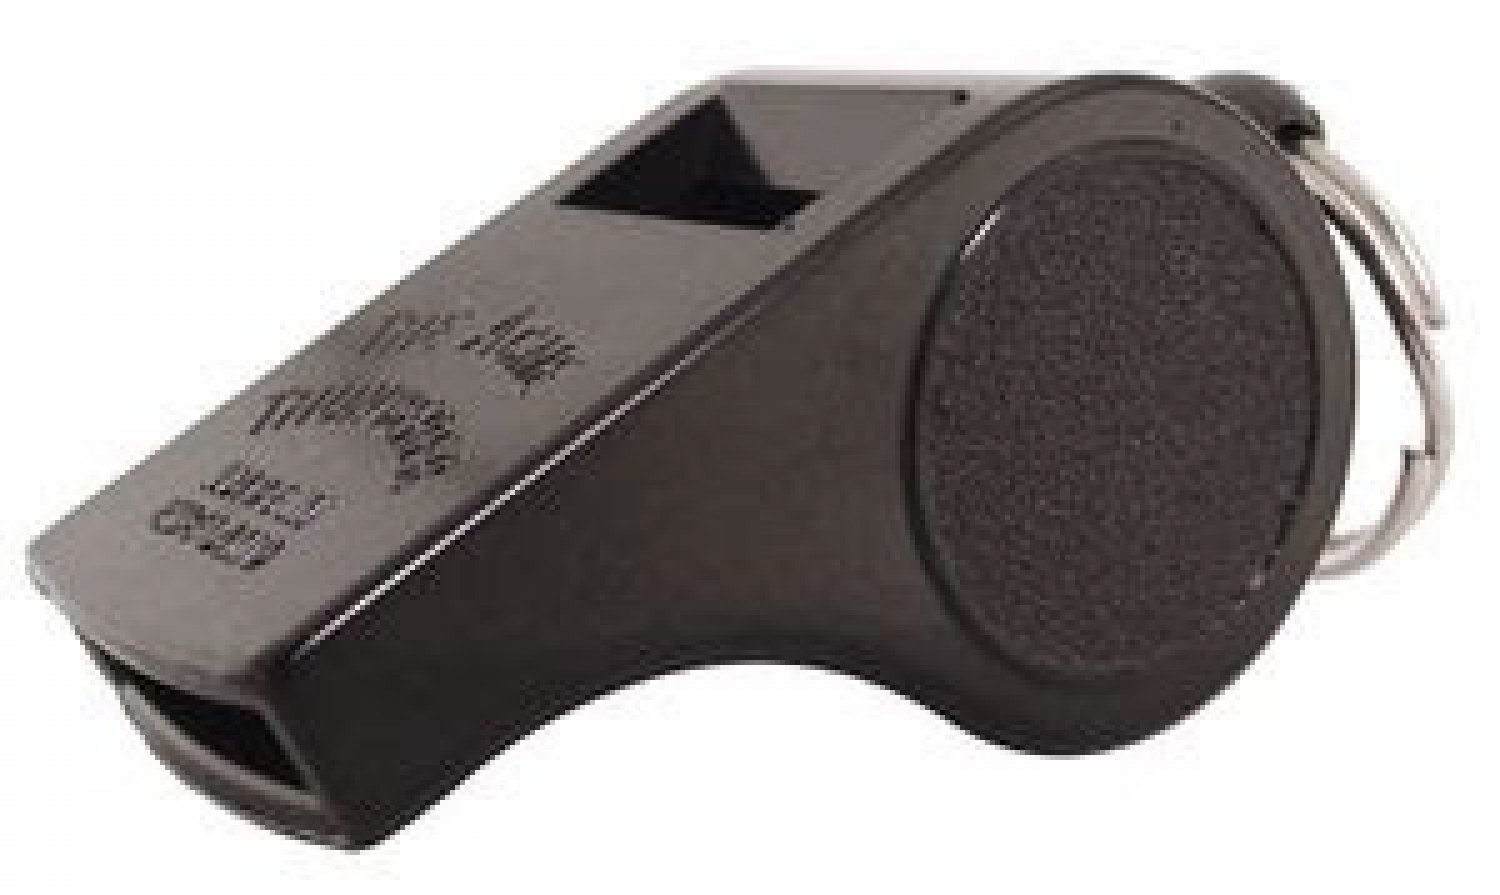 Acme Thunderer Model 660 Small Plastic Referee Whistle White 